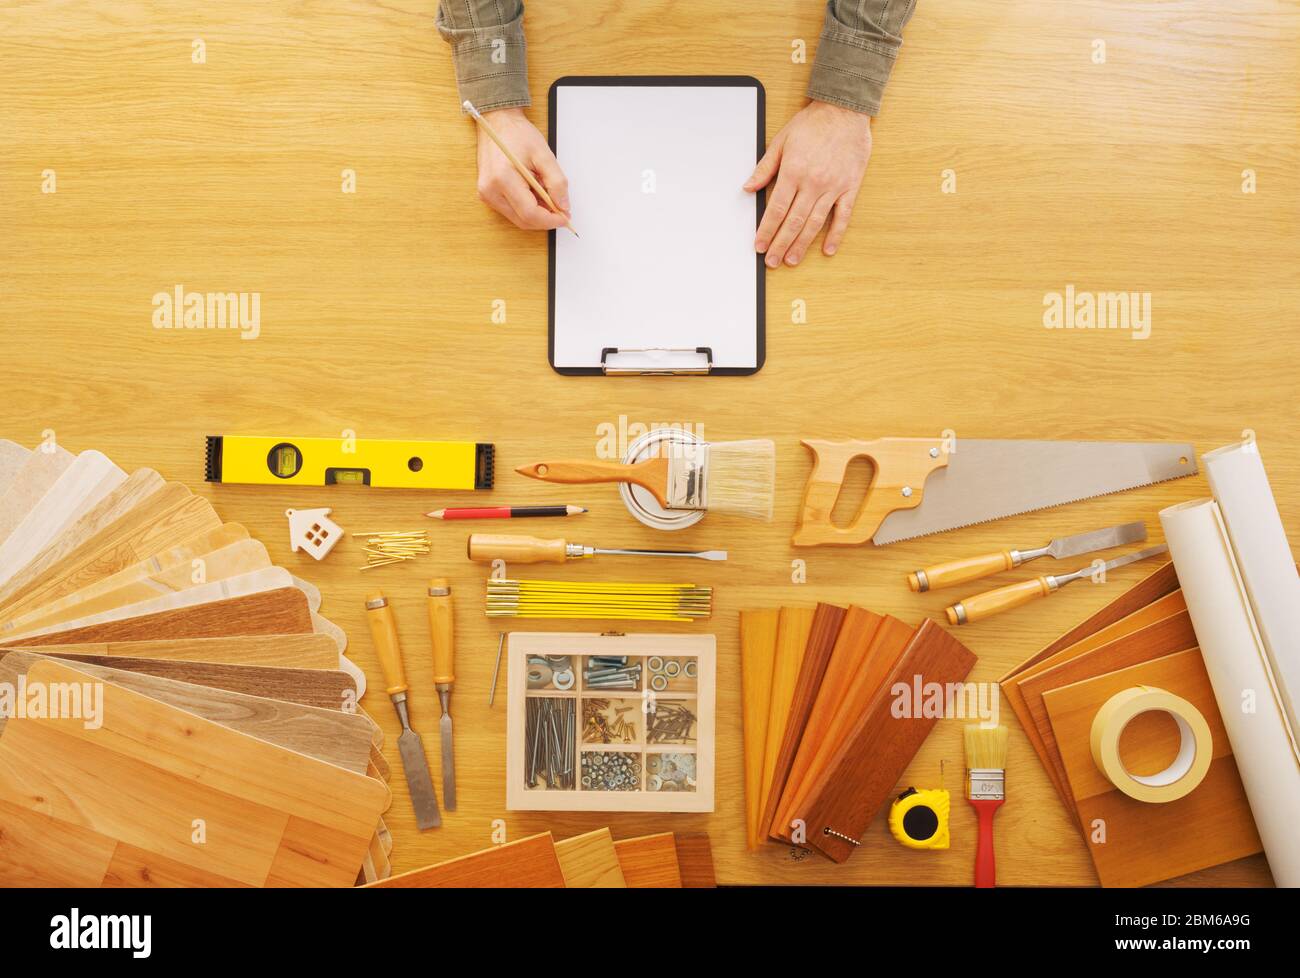 Hombre manos bosquejando un proyecto en un portapapeles, mesa de trabajo con herramientas de bricolaje vista superior Foto de stock